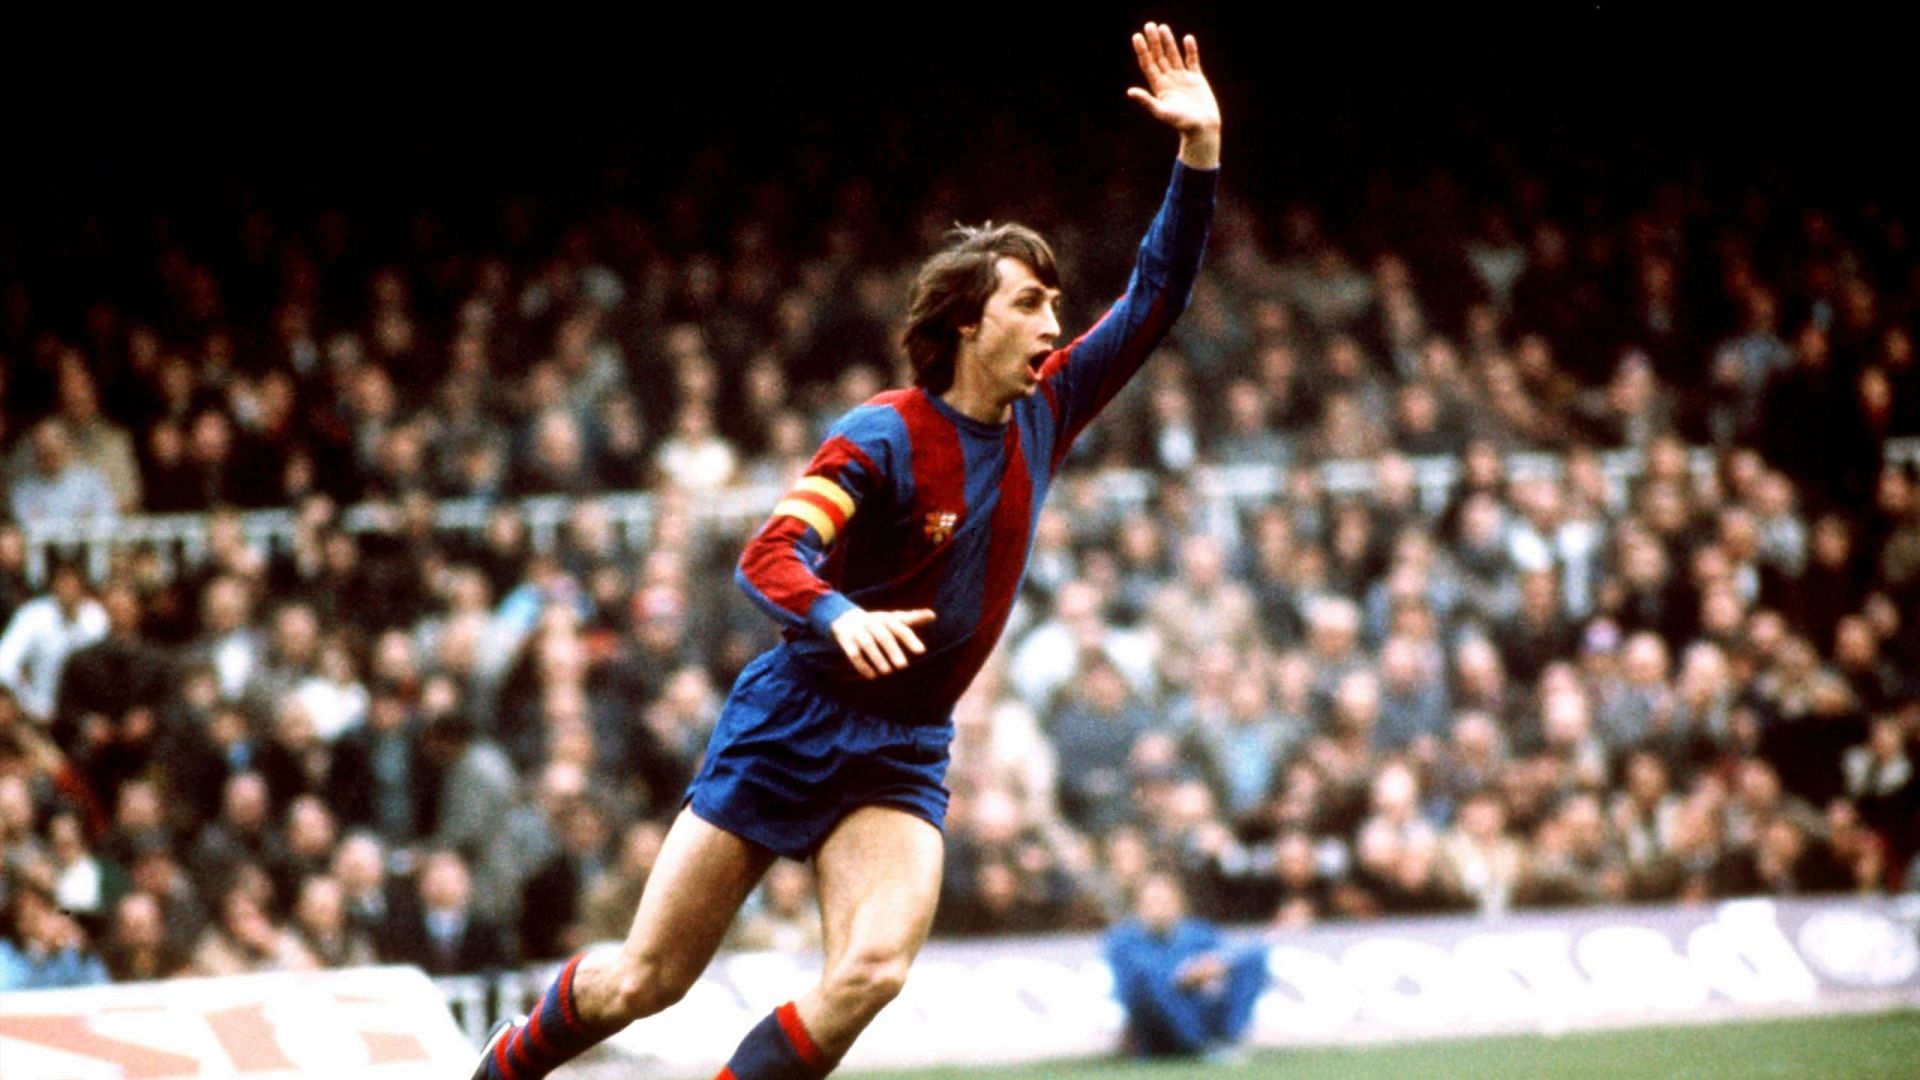 Johan Cruyff playing for FC Barcelona